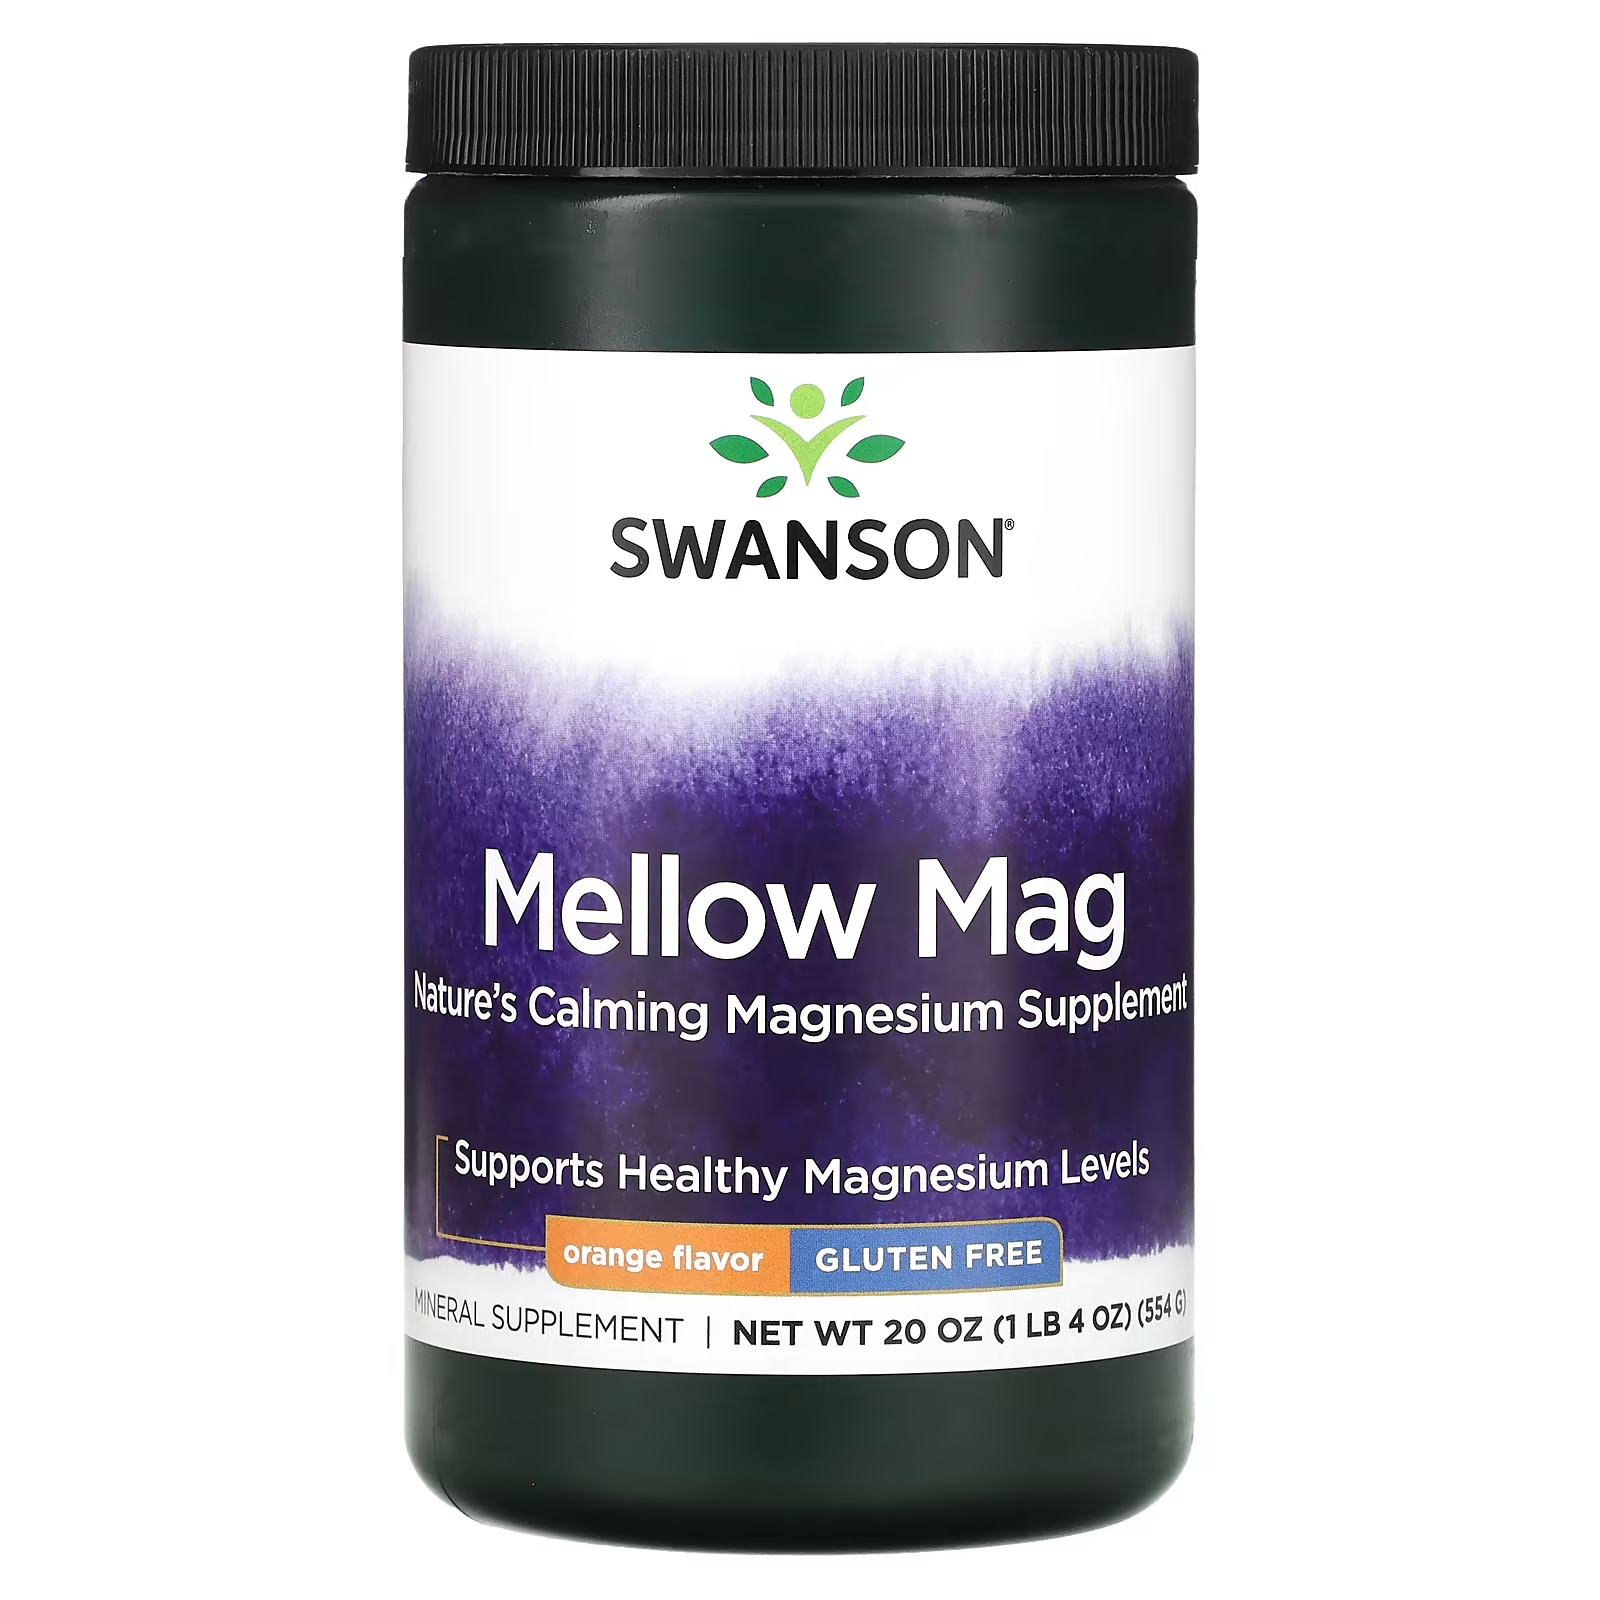 Пищевая добавка Swanson Mellow Mag со вкусом апельсина, 554 г пищевая добавка orzax the collagen mag plus 9700 мг со вкусом клубники и арбуза 30 пакетиков